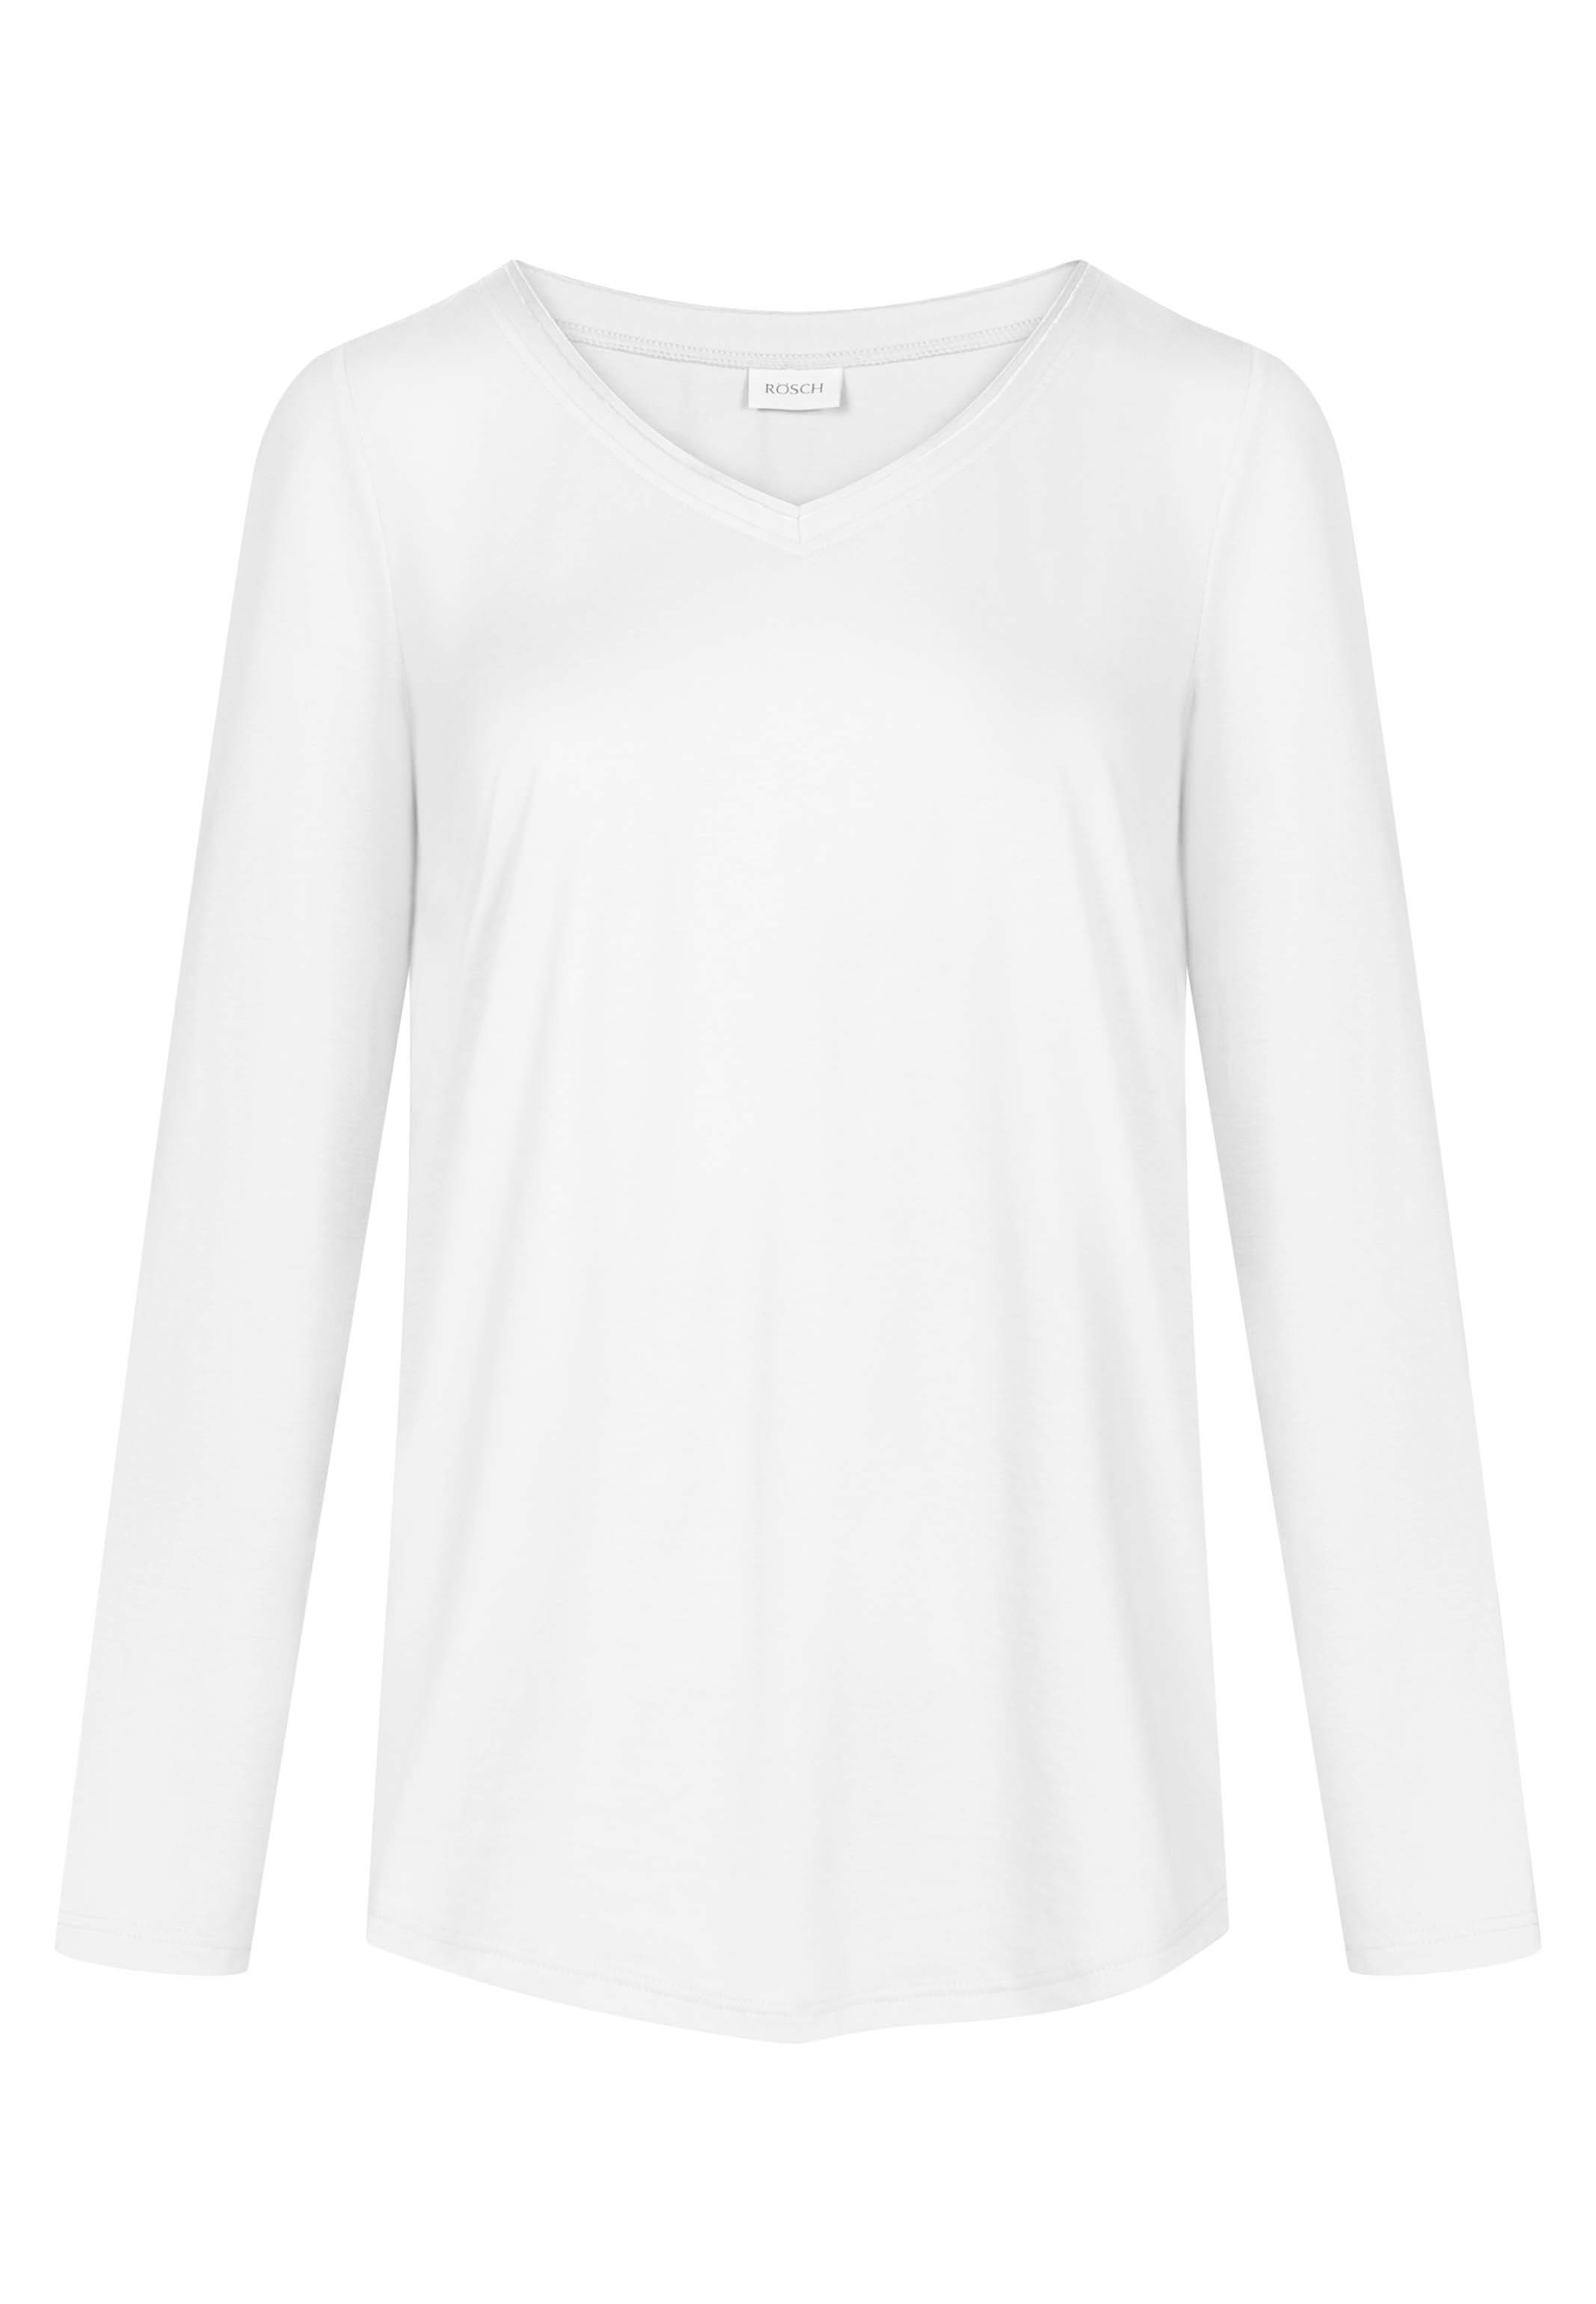 - Schlafanzug Shirt Weiß Basic - Baumwolle (1-tlg) Pyjamaoberteil Rösch